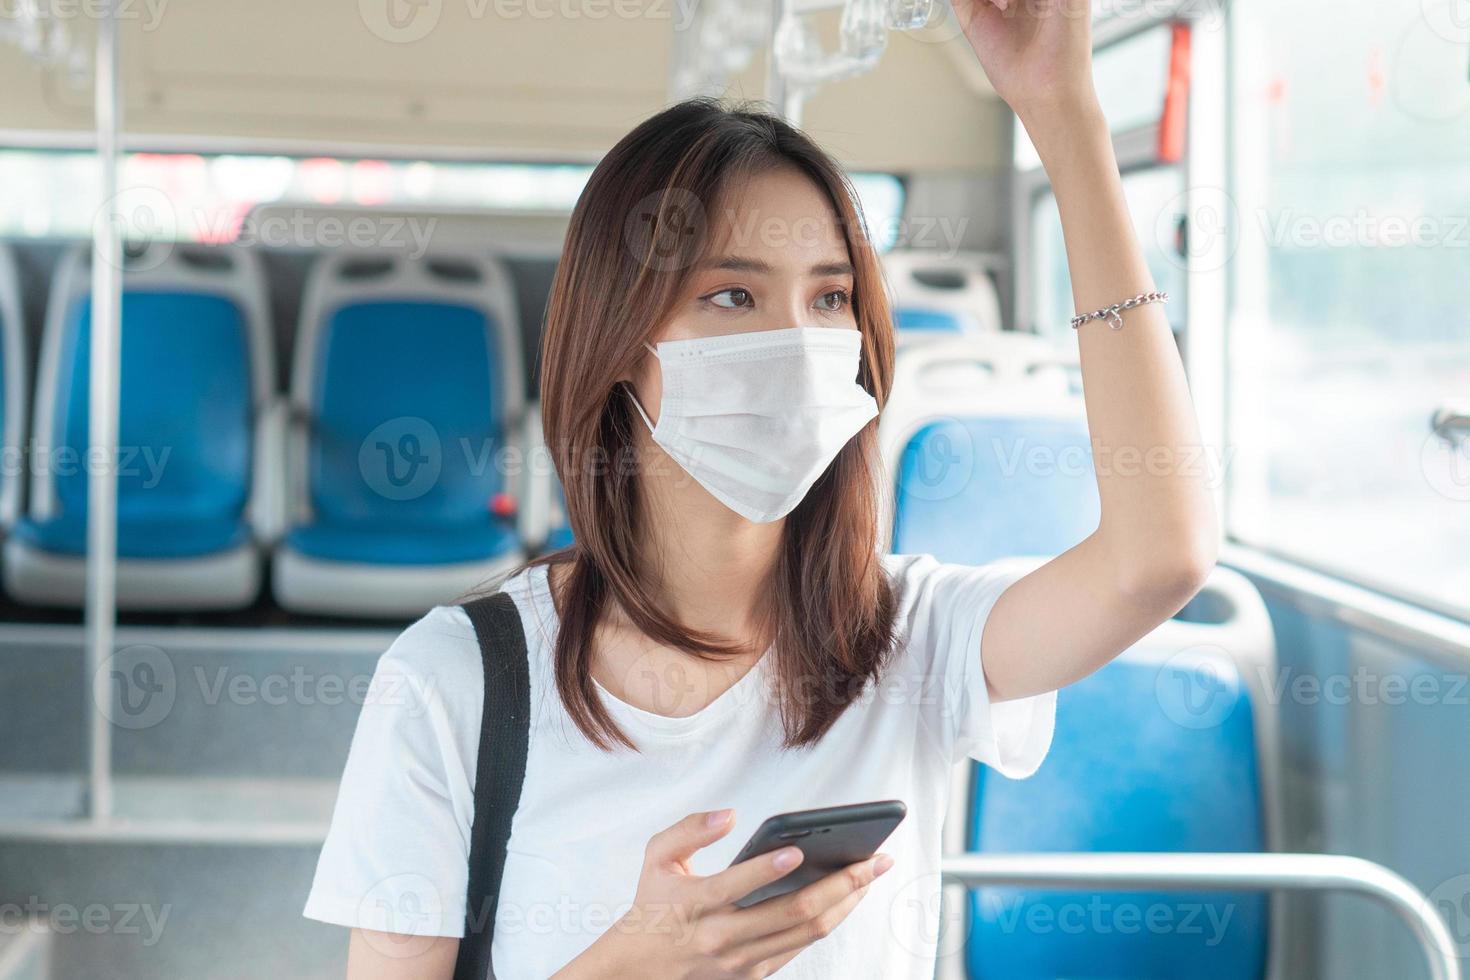 Chica asiática con máscara mientras usa el teléfono inteligente en el autobús foto